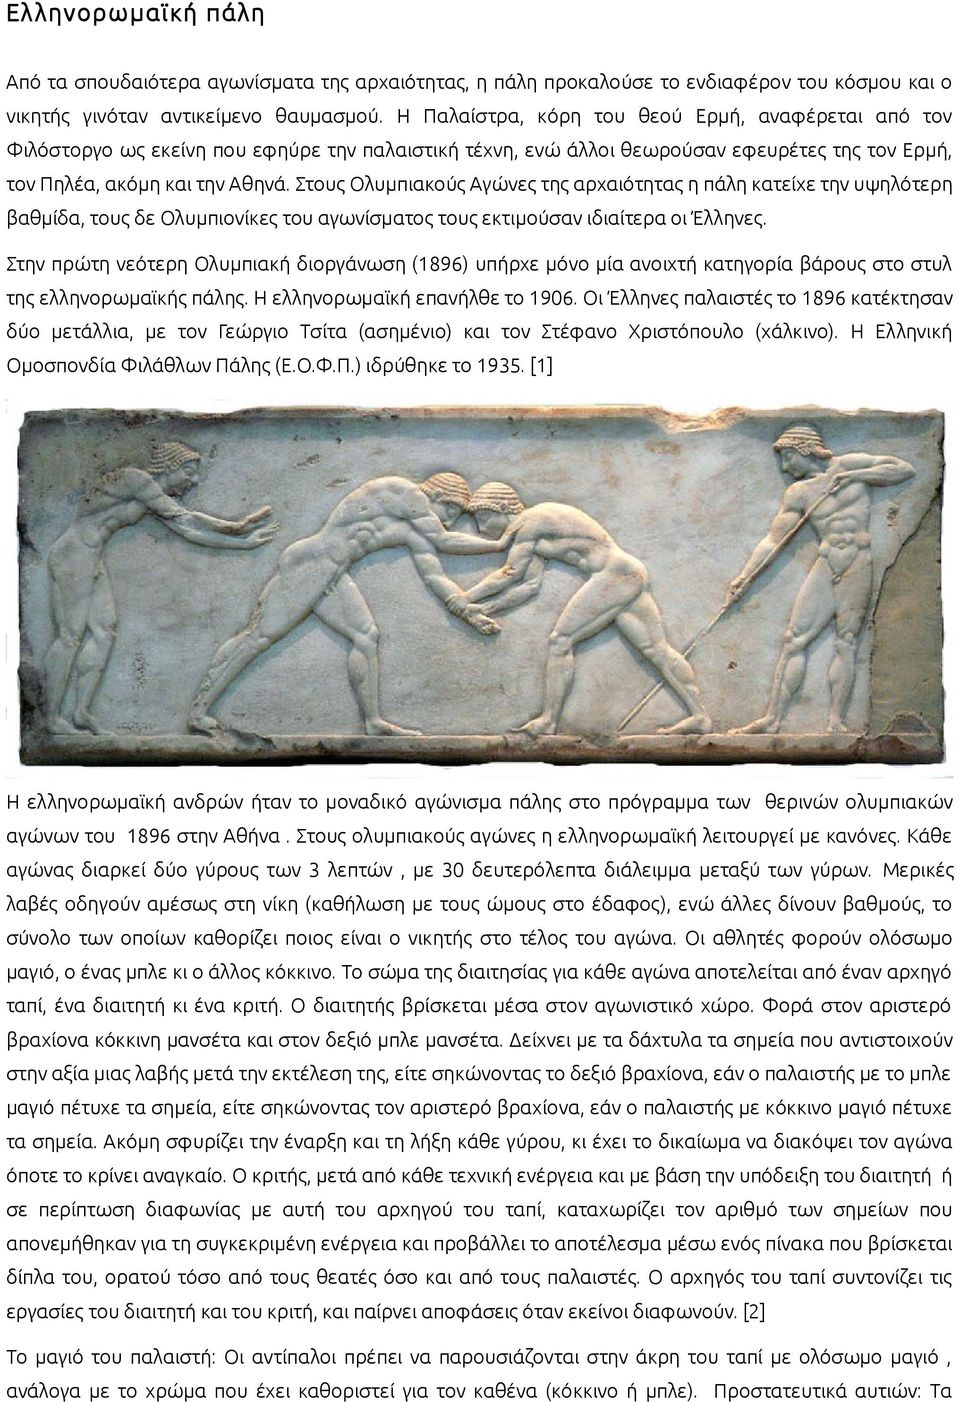 Στους Ολυμπιακούς Αγώνες της αρχαιότητας η πάλη κατείχε την υψηλότερη βαθμίδα, τους δε Ολυμπιονίκες του αγωνίσματος τους εκτιμούσαν ιδιαίτερα οι Έλληνες.